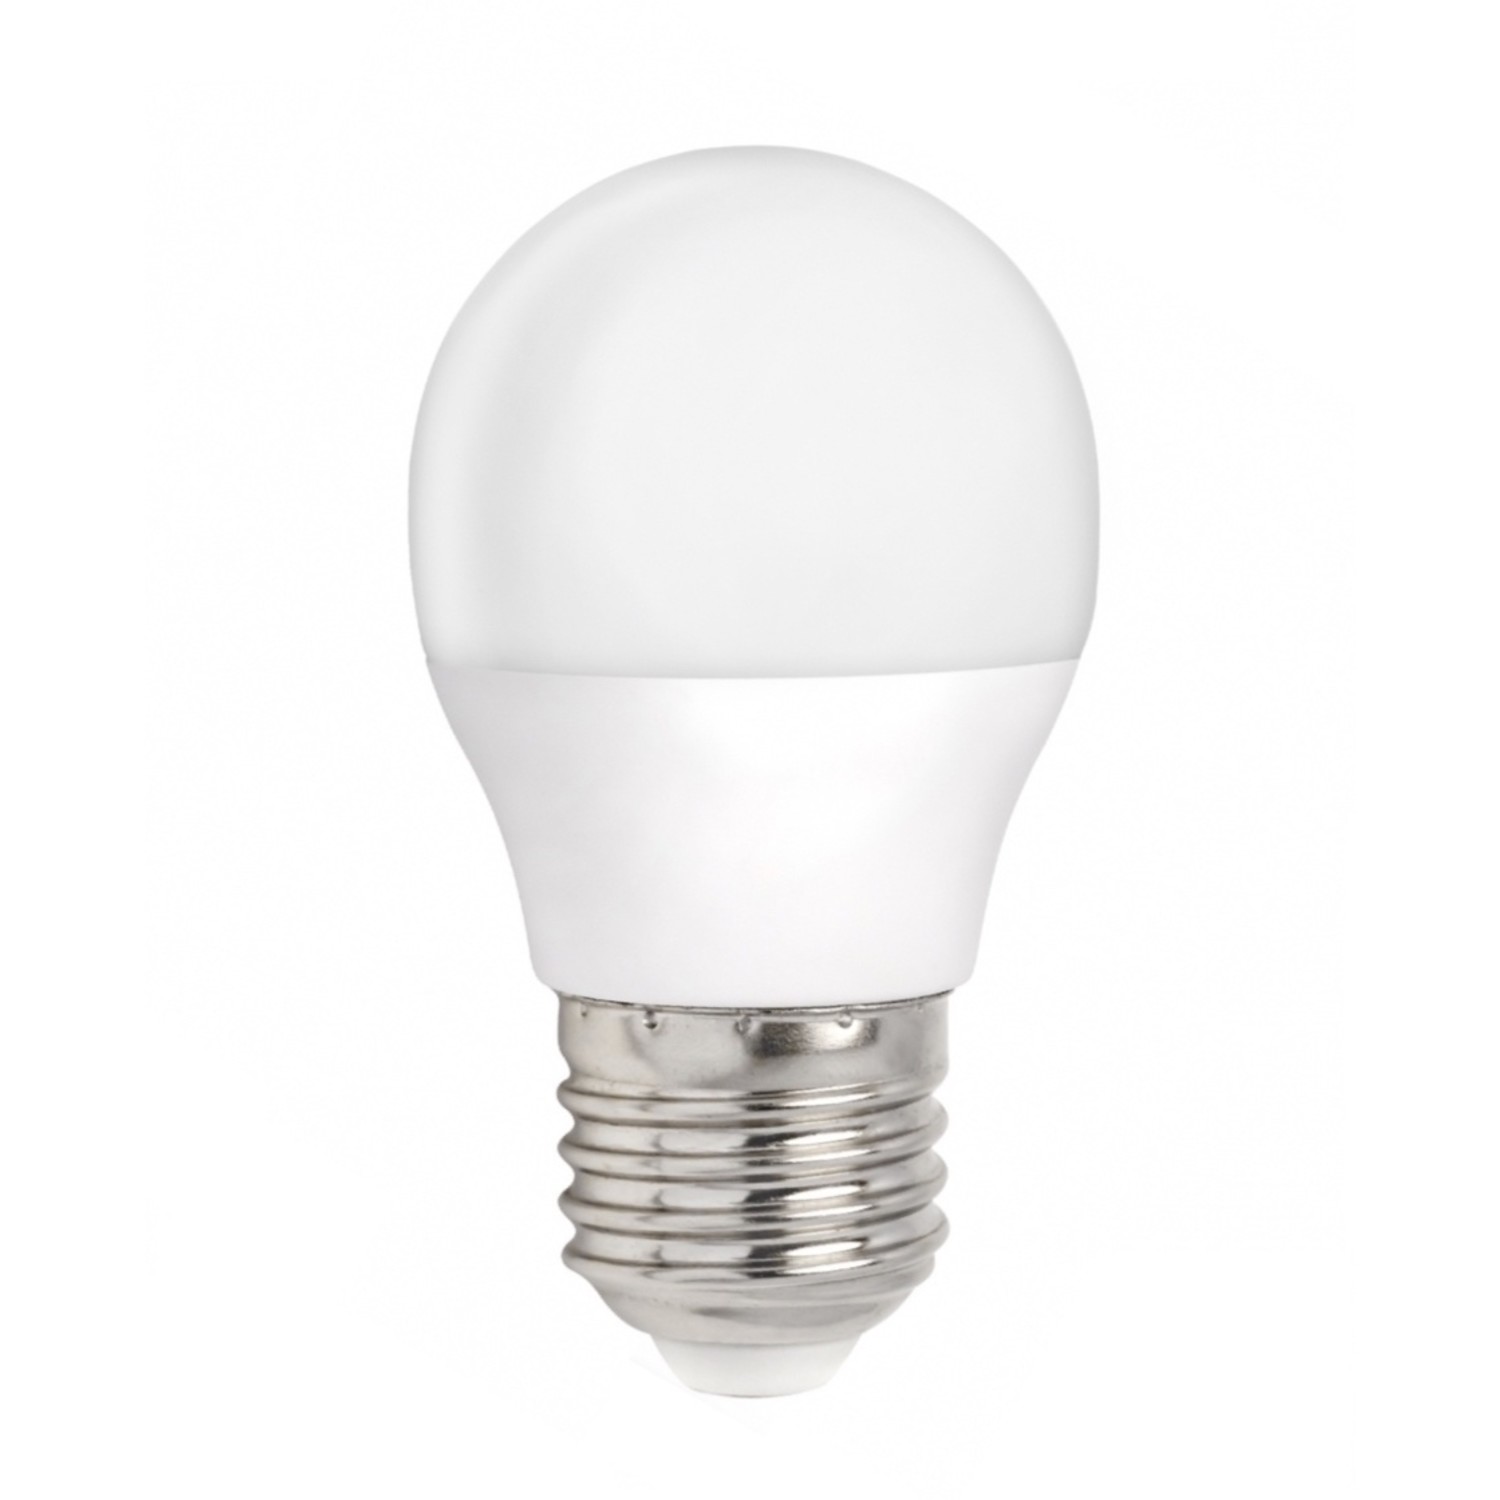 Samengroeiing Bevestiging genetisch LED lamp - E27 fitting - 3W vervangt 25W - Warm wit licht 3000K -  Ledlichtdiscounter.nl